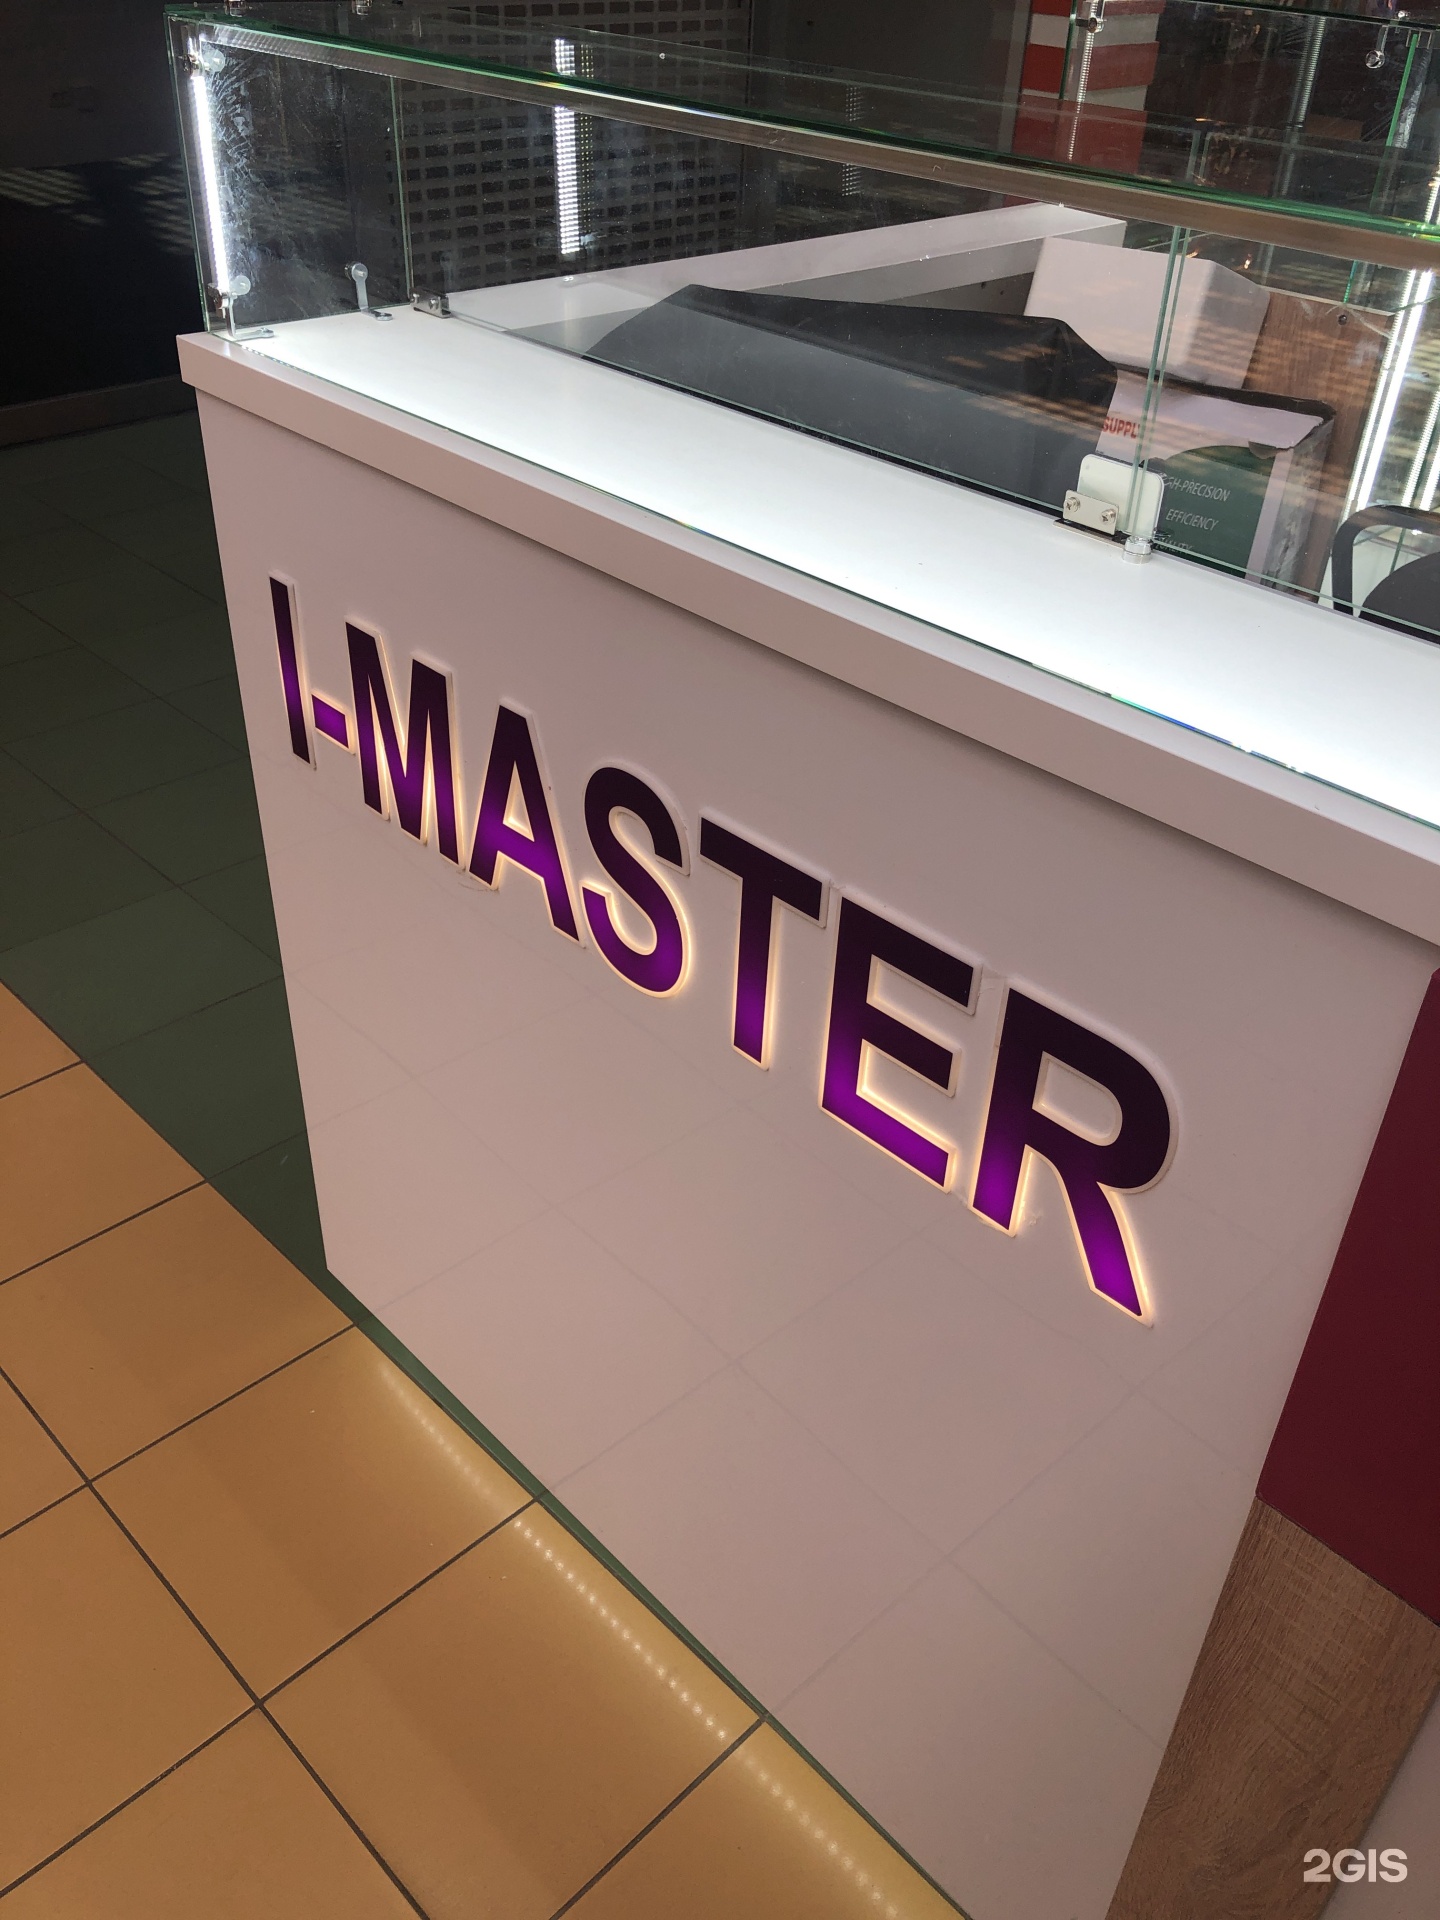 Masters сервисный центр